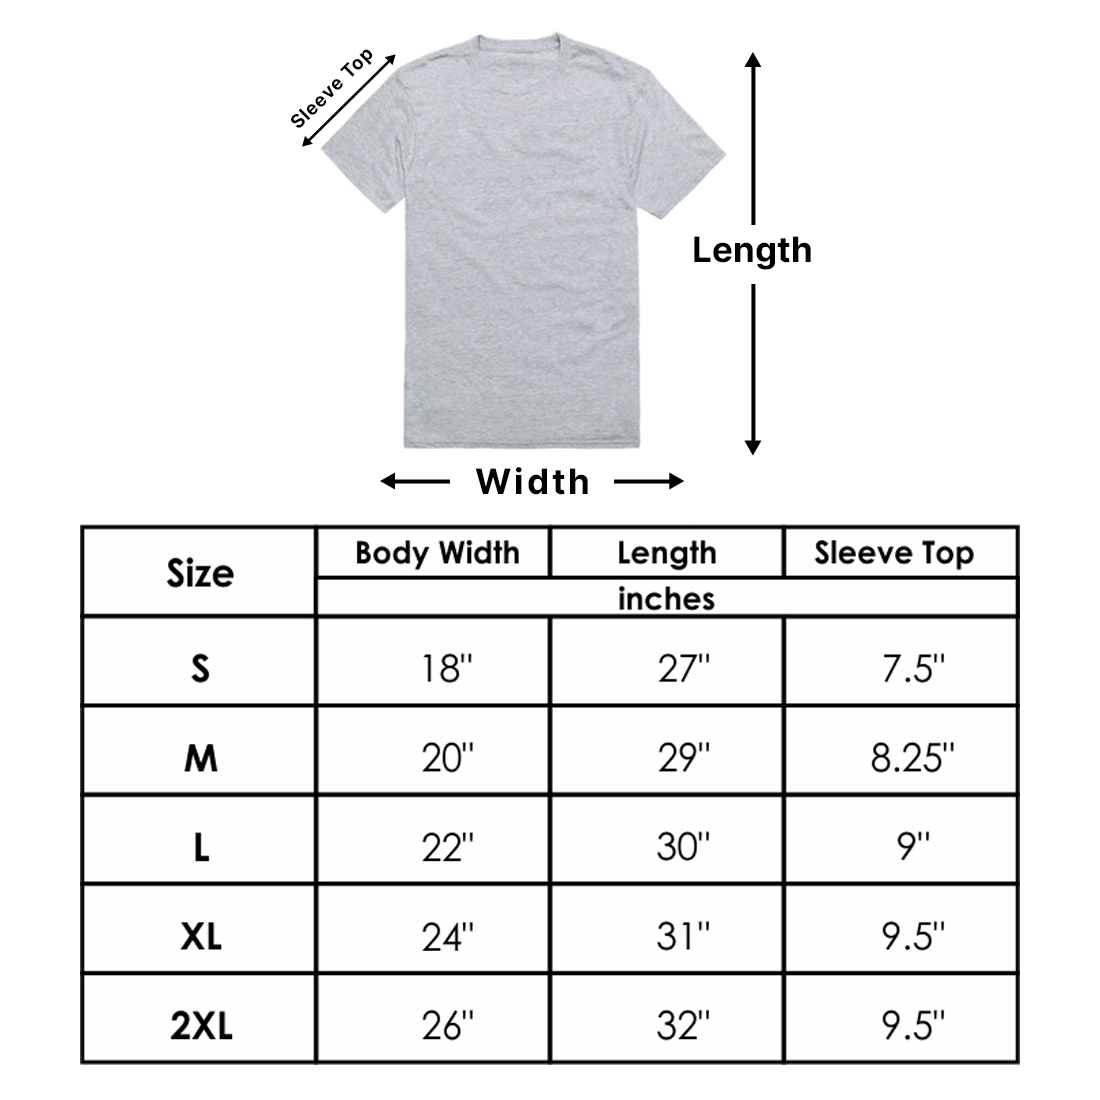 T-Shirt Size Chart.